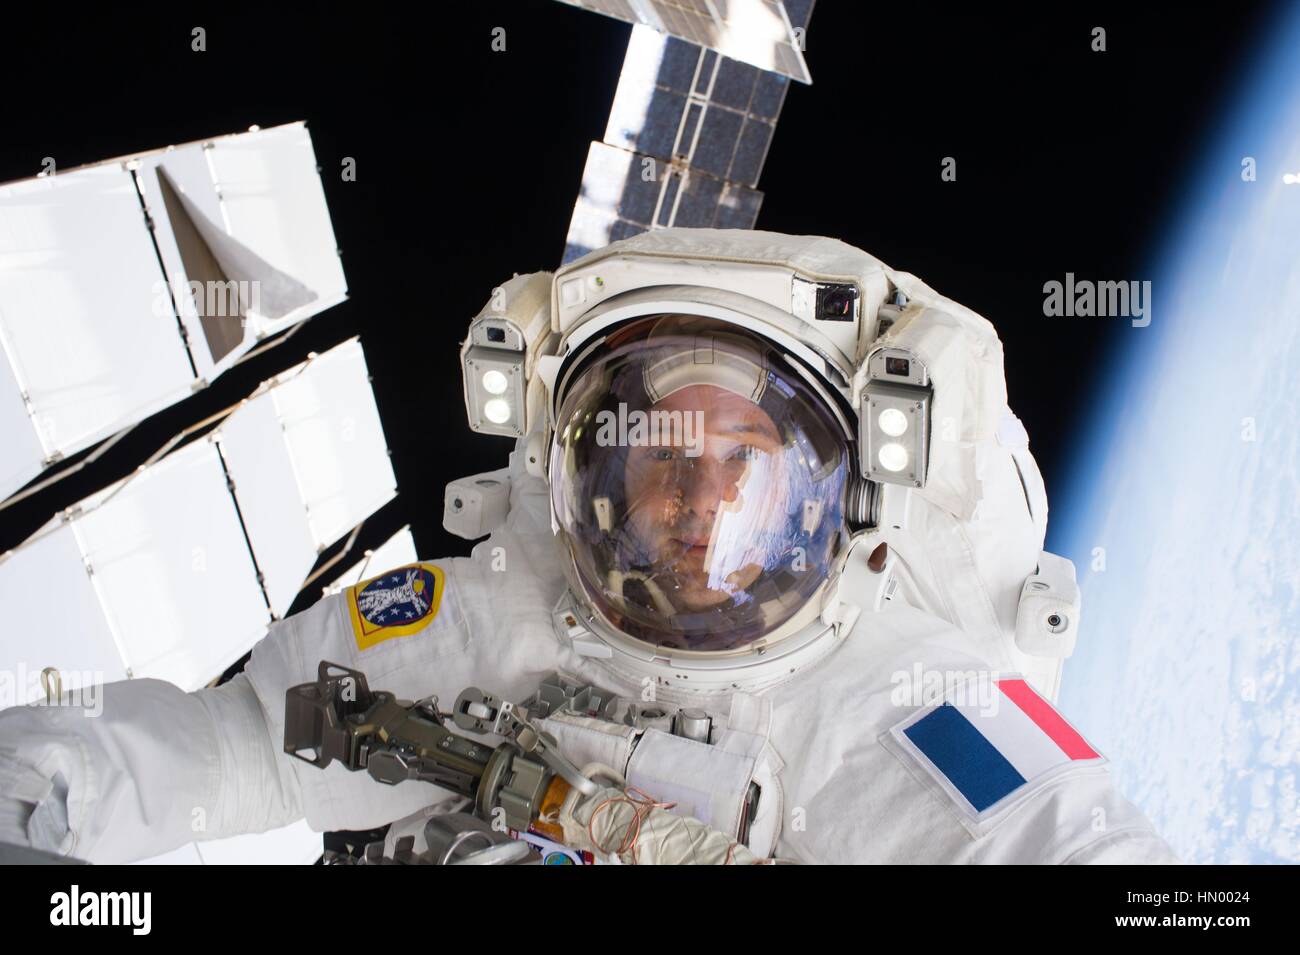 NASA-Expedition 50 erstklassige Crew Mitglied französischer Astronaut Thomas Pesquet von der European Space Agency arbeitet auf der internationalen Raumstation ISS während einem Weltraumspaziergang 13. Januar 2017 in der Erdumlaufbahn. Stockfoto